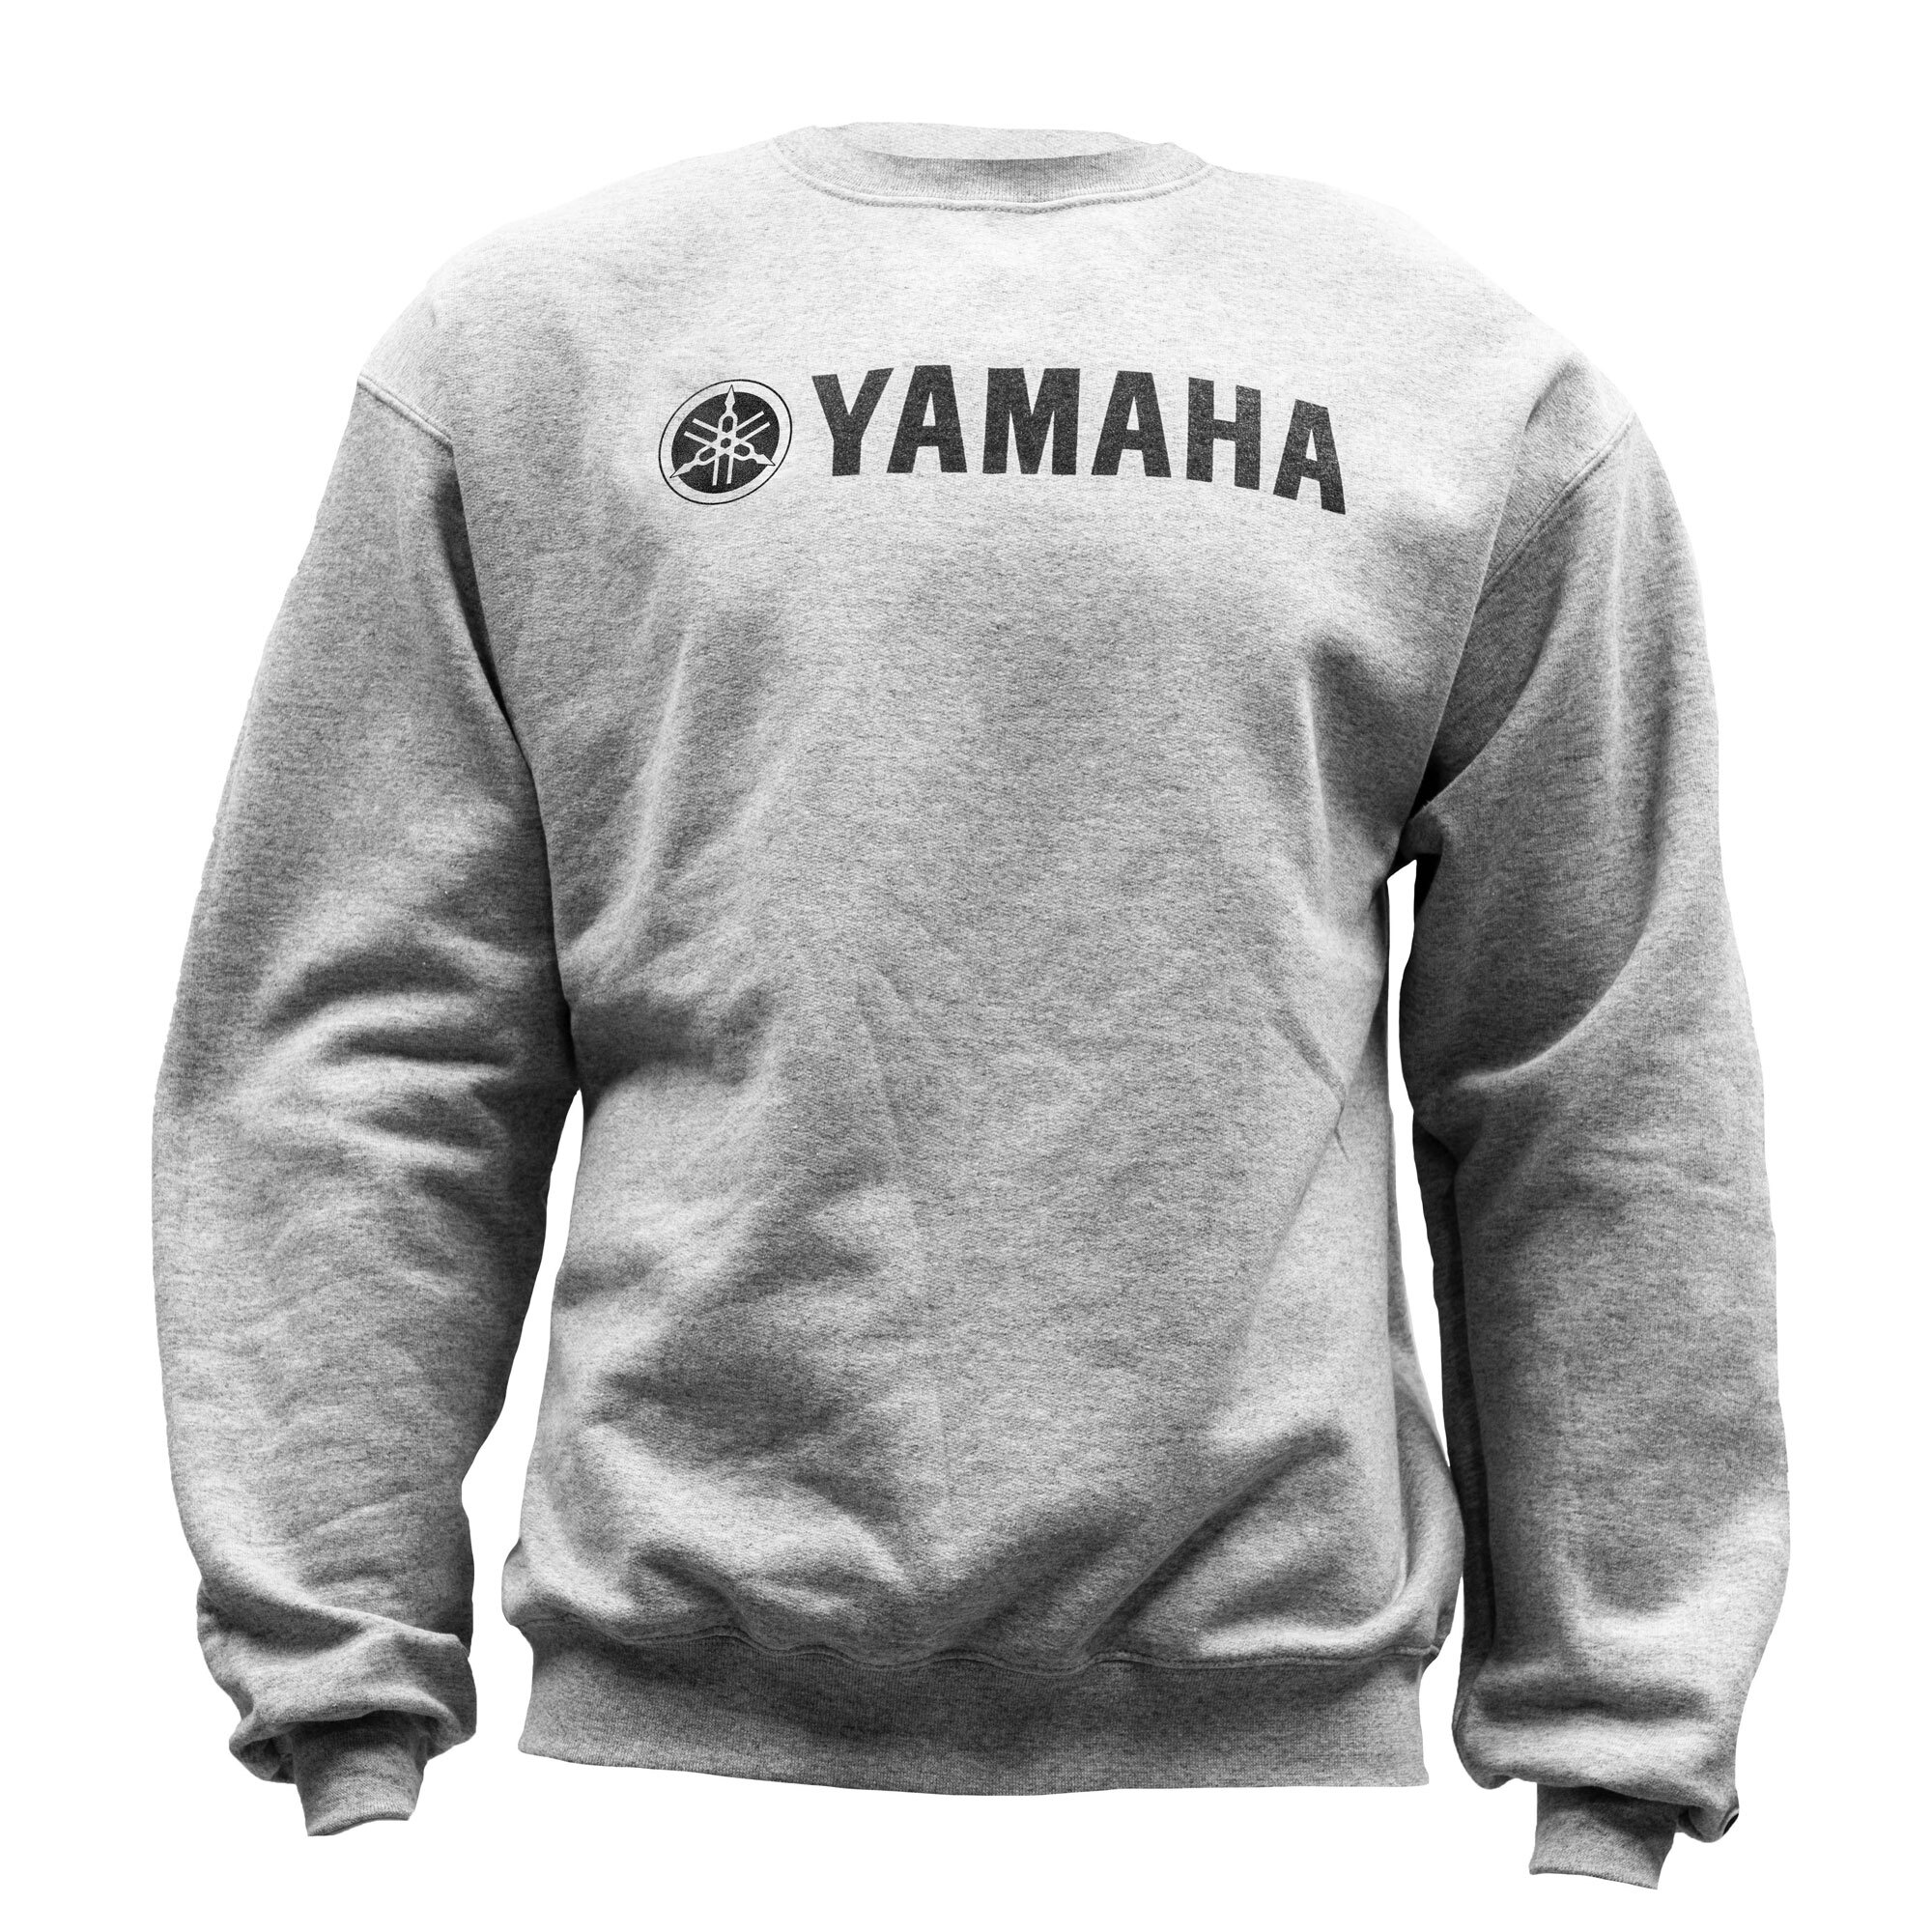 Yamaha Classic Sweatshirt by Champion® Double Extra Large grey